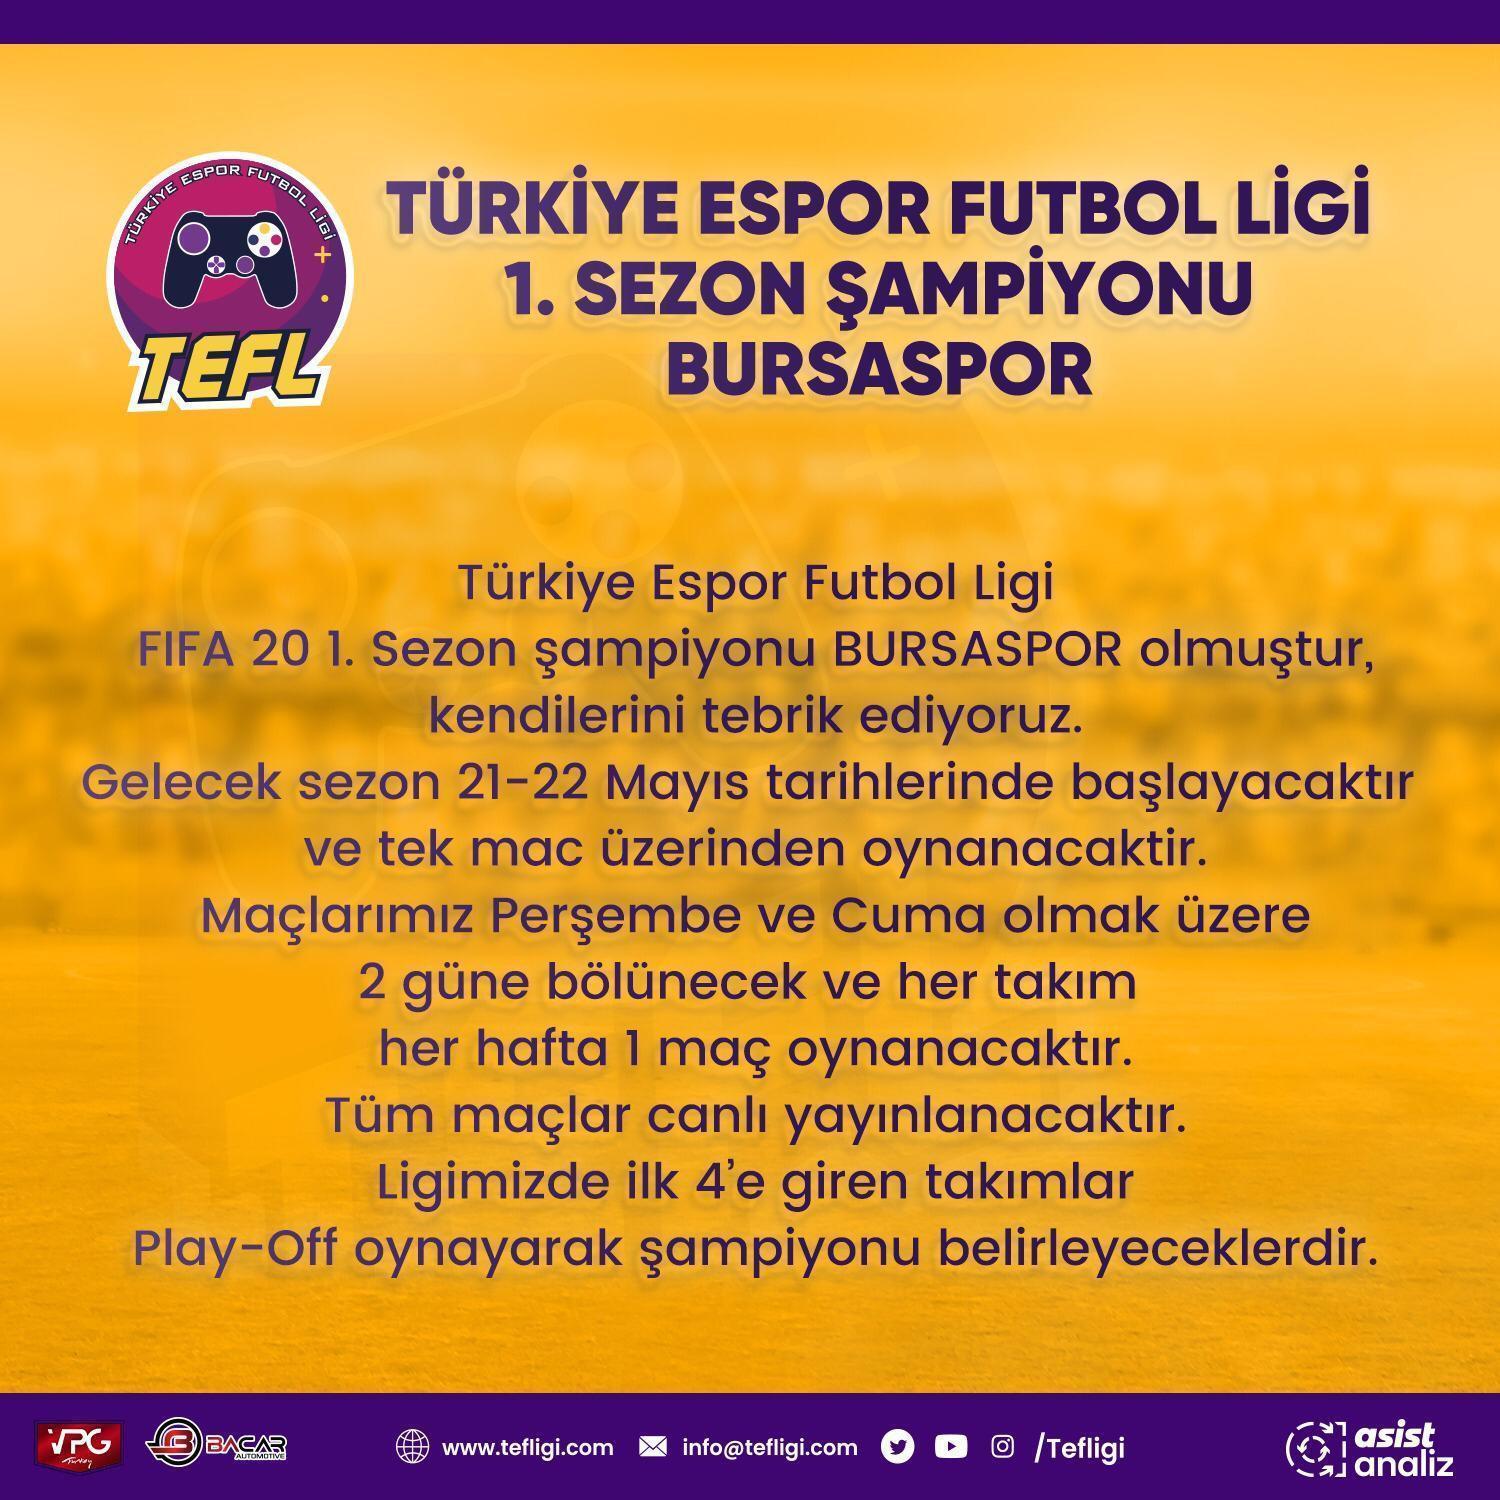 Esporda ilk sezonun şampiyonu Bursaspor